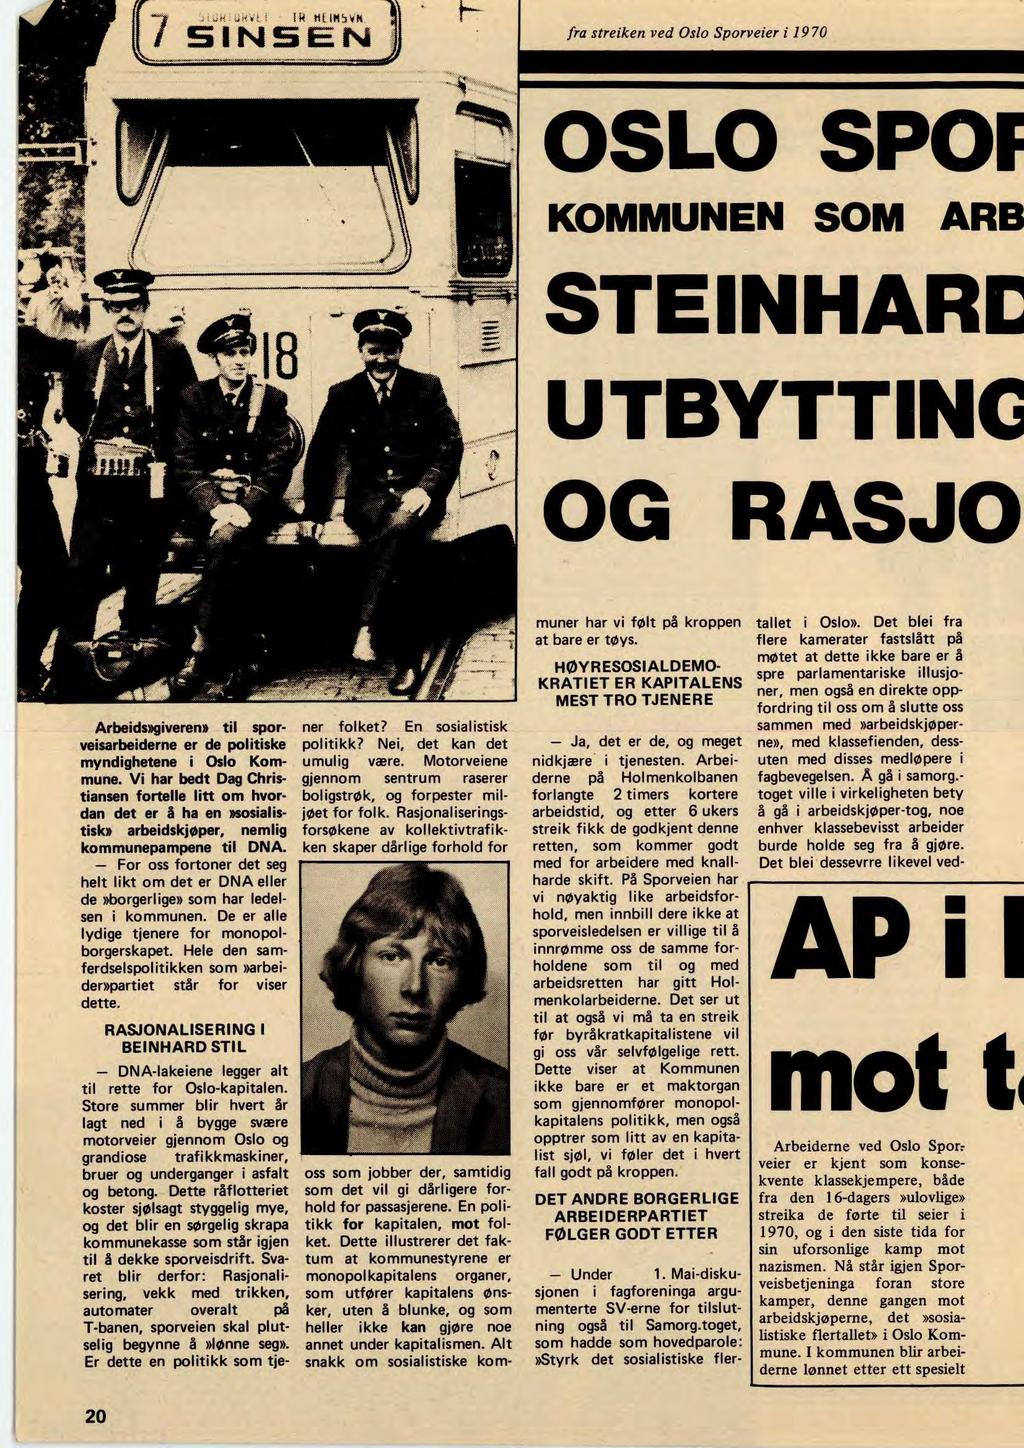 fra streiken ved Oslo Sporveier i 1970 OSLO SPOF KOMMUNEN SOM ARB STEINHARE UTBYTTING OG RASJO Arbeids»giveren» til sporveisarbeiderne er de politiske myndighetene i Oslo Kommune.